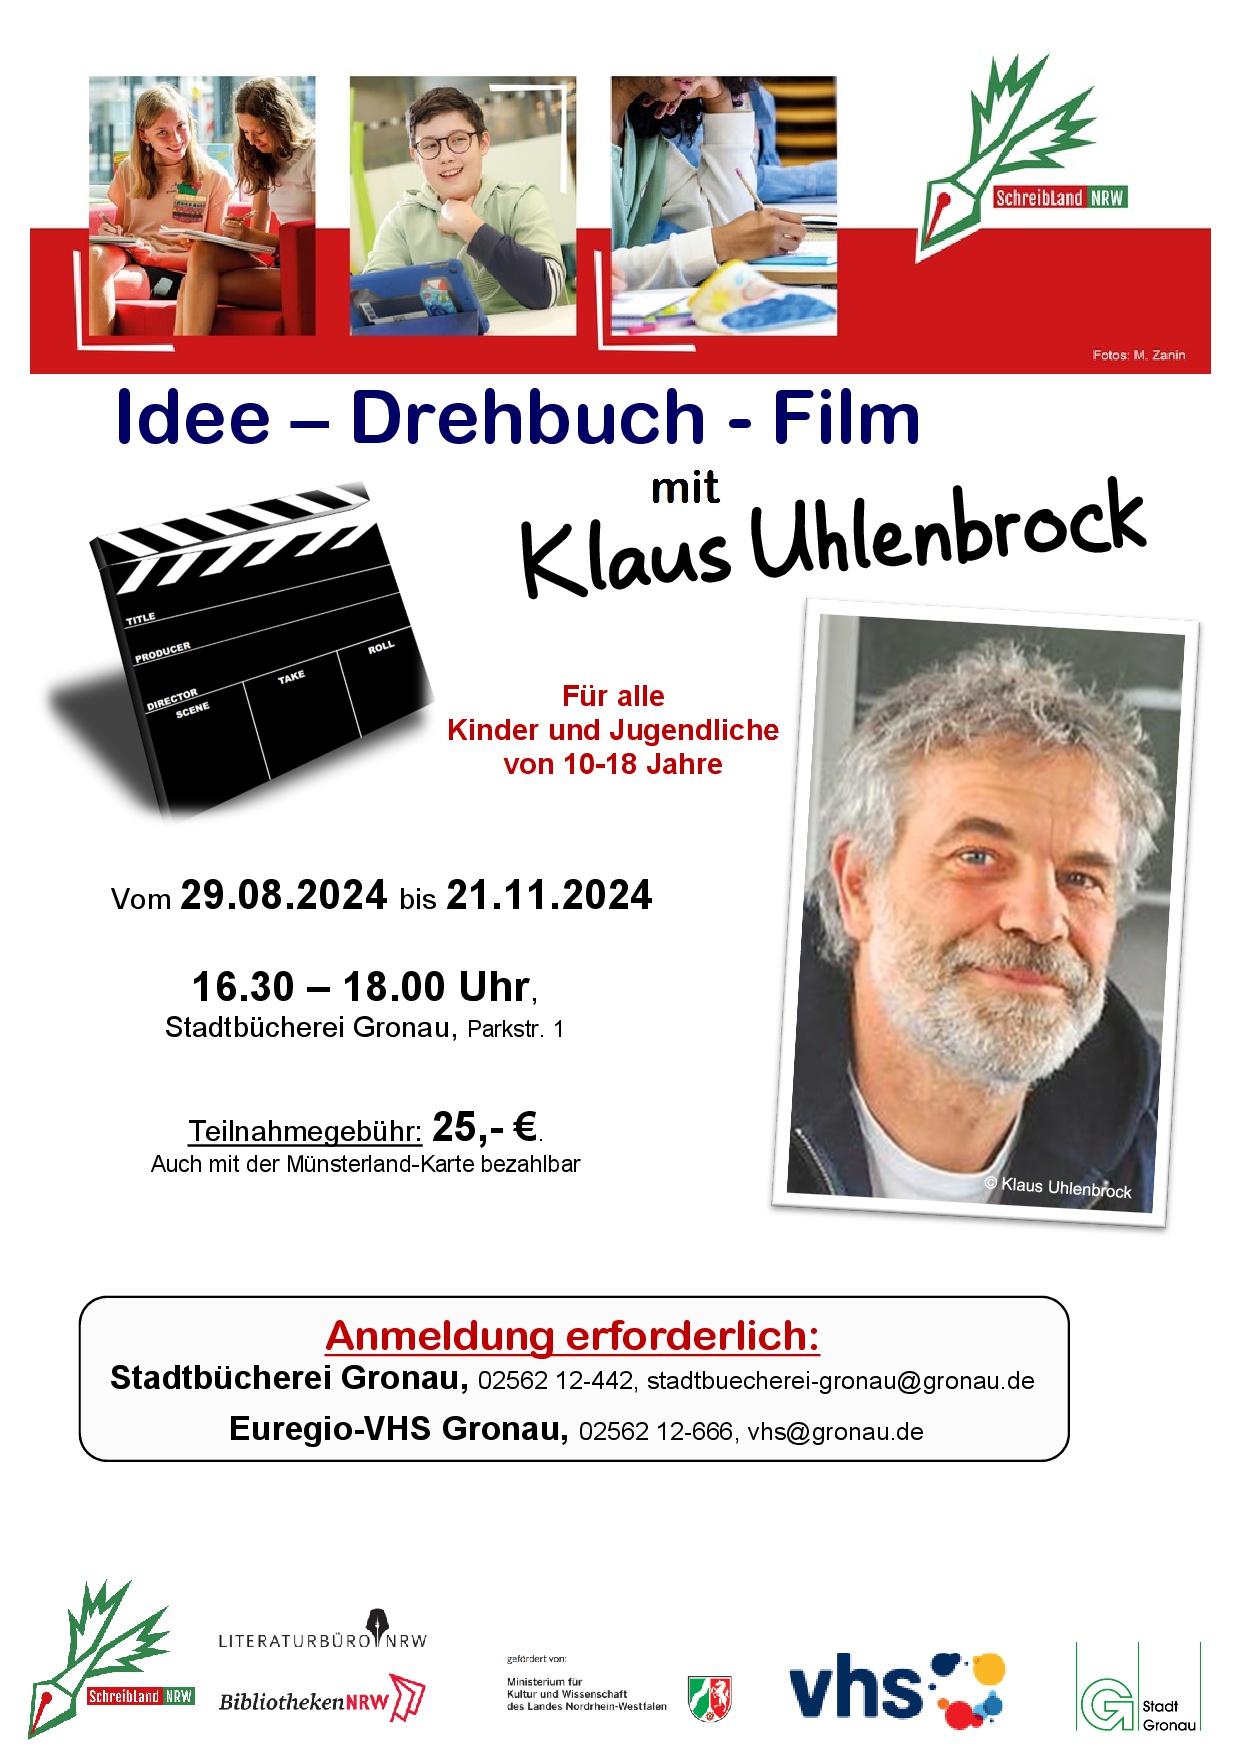 Idee-Drehbuch-Film mit Klaus Uhlenbrock. Für alle Kinder und Jugendliche von 10-18 Jahre.